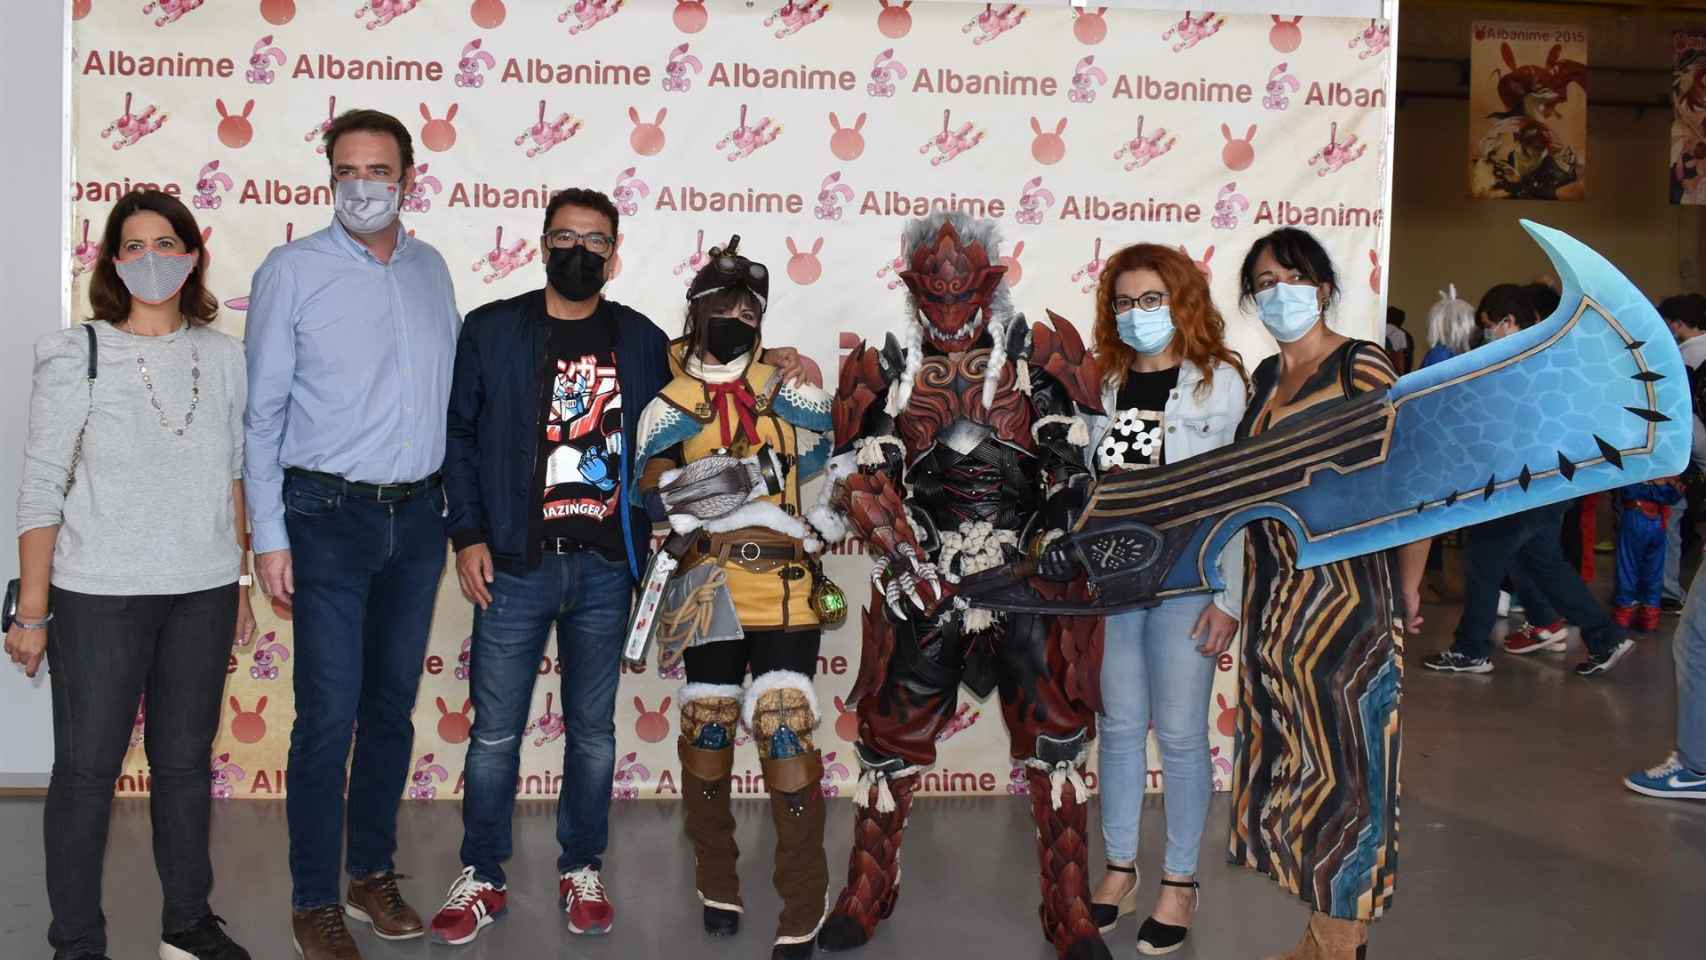 'Albanime' convierte a Albacete en referencia nacional del manga, anime y ocio alternativo